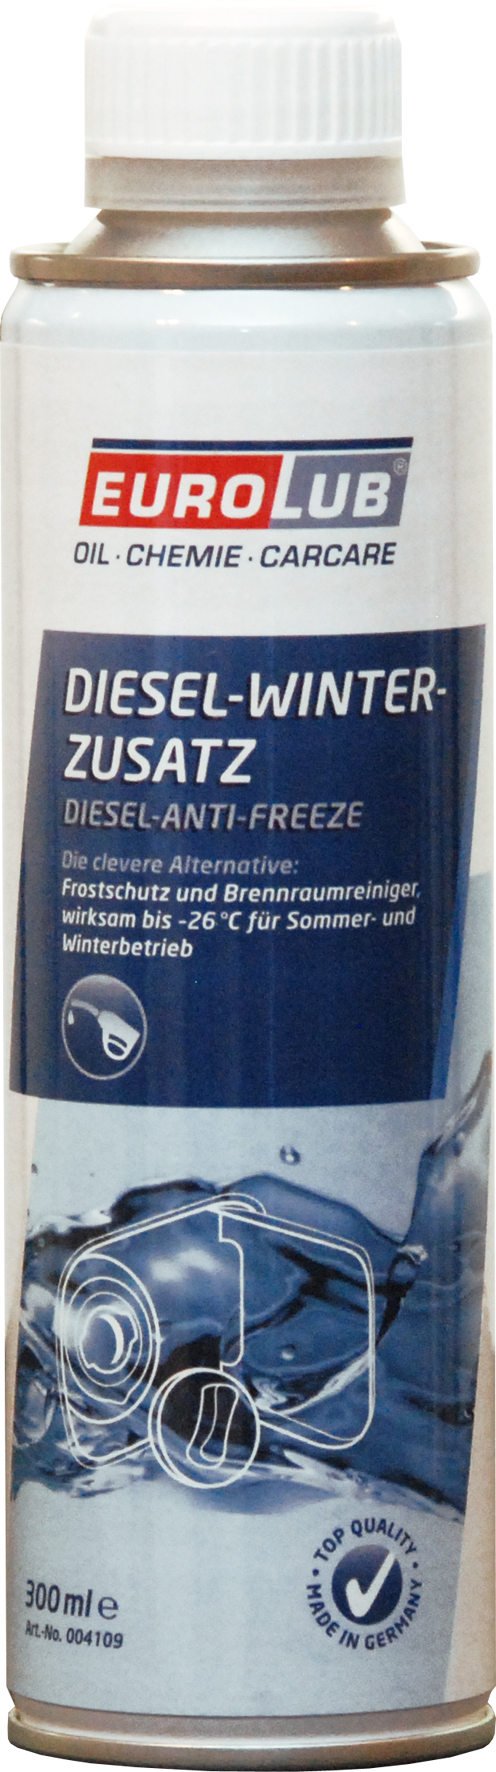 EUROLUB Diesel-Winterzusatz 1 x 300 ml